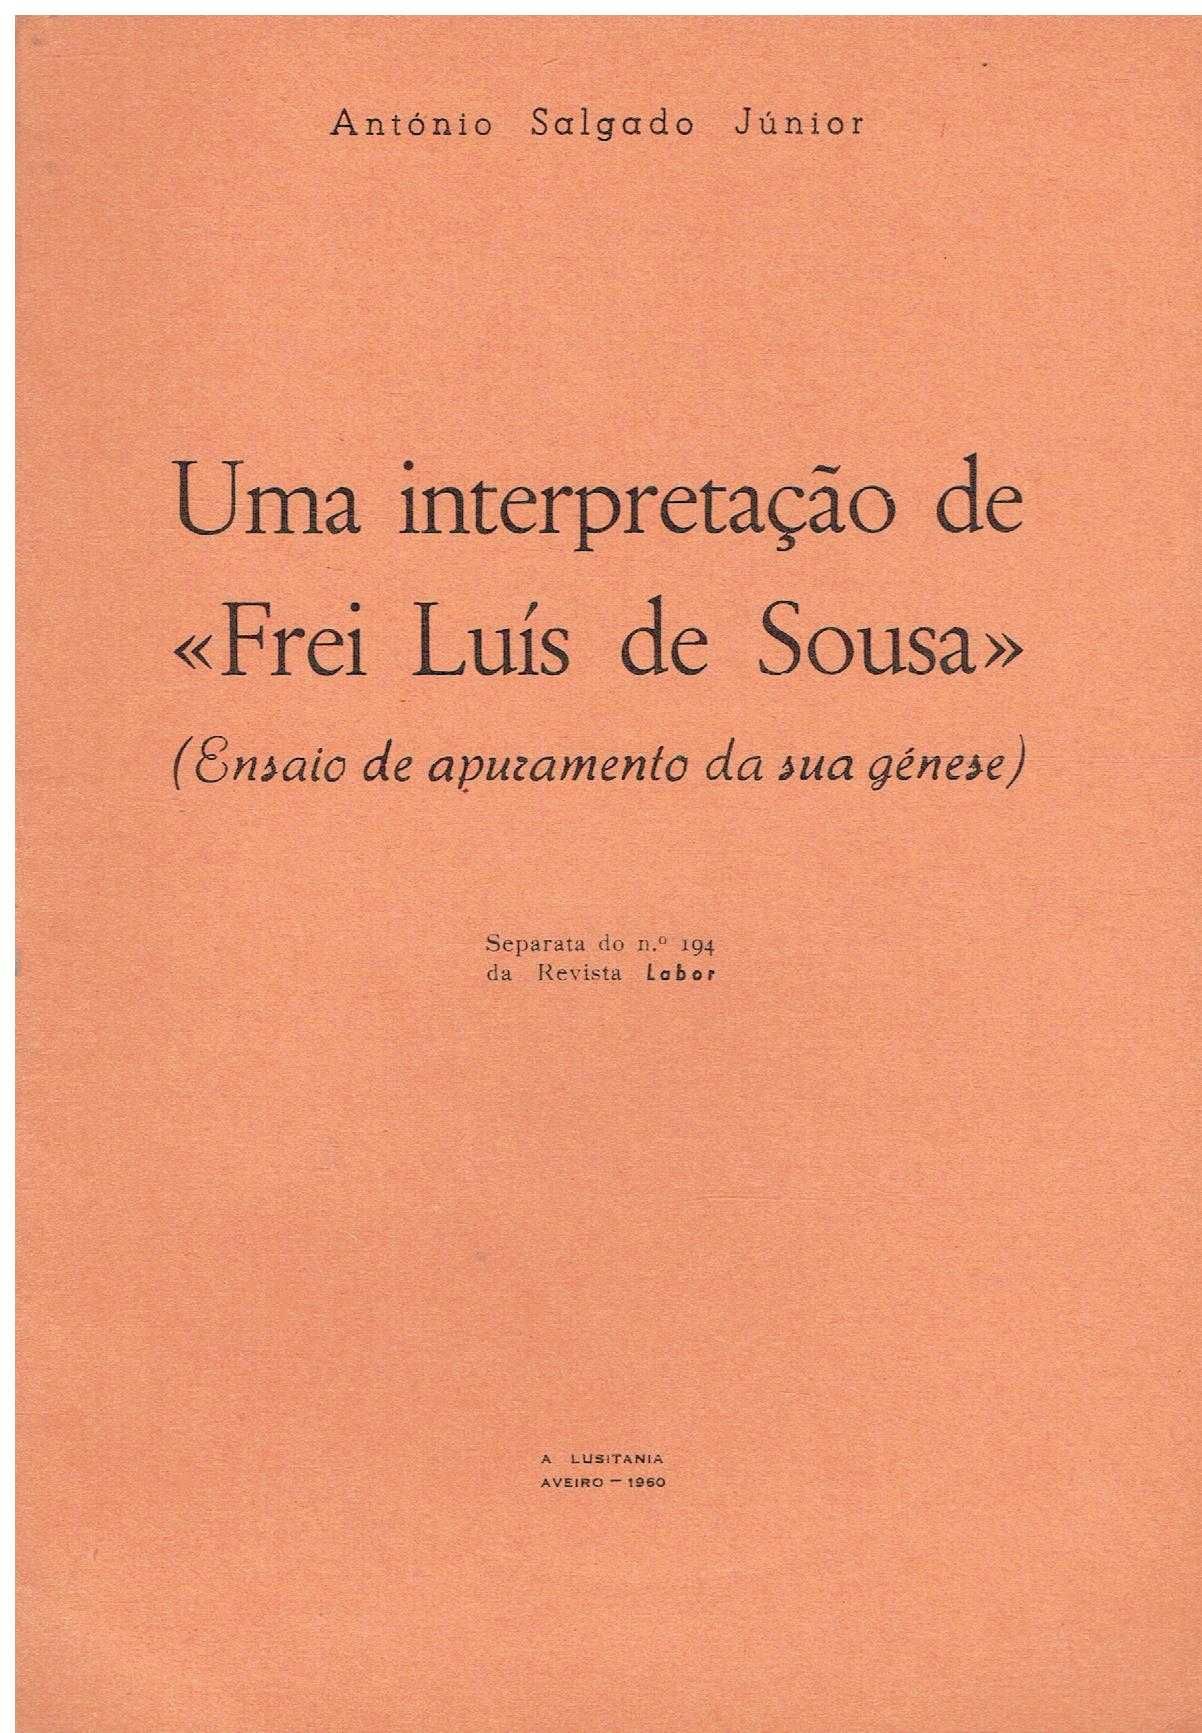 12579

Livros de António Salgado Júnior